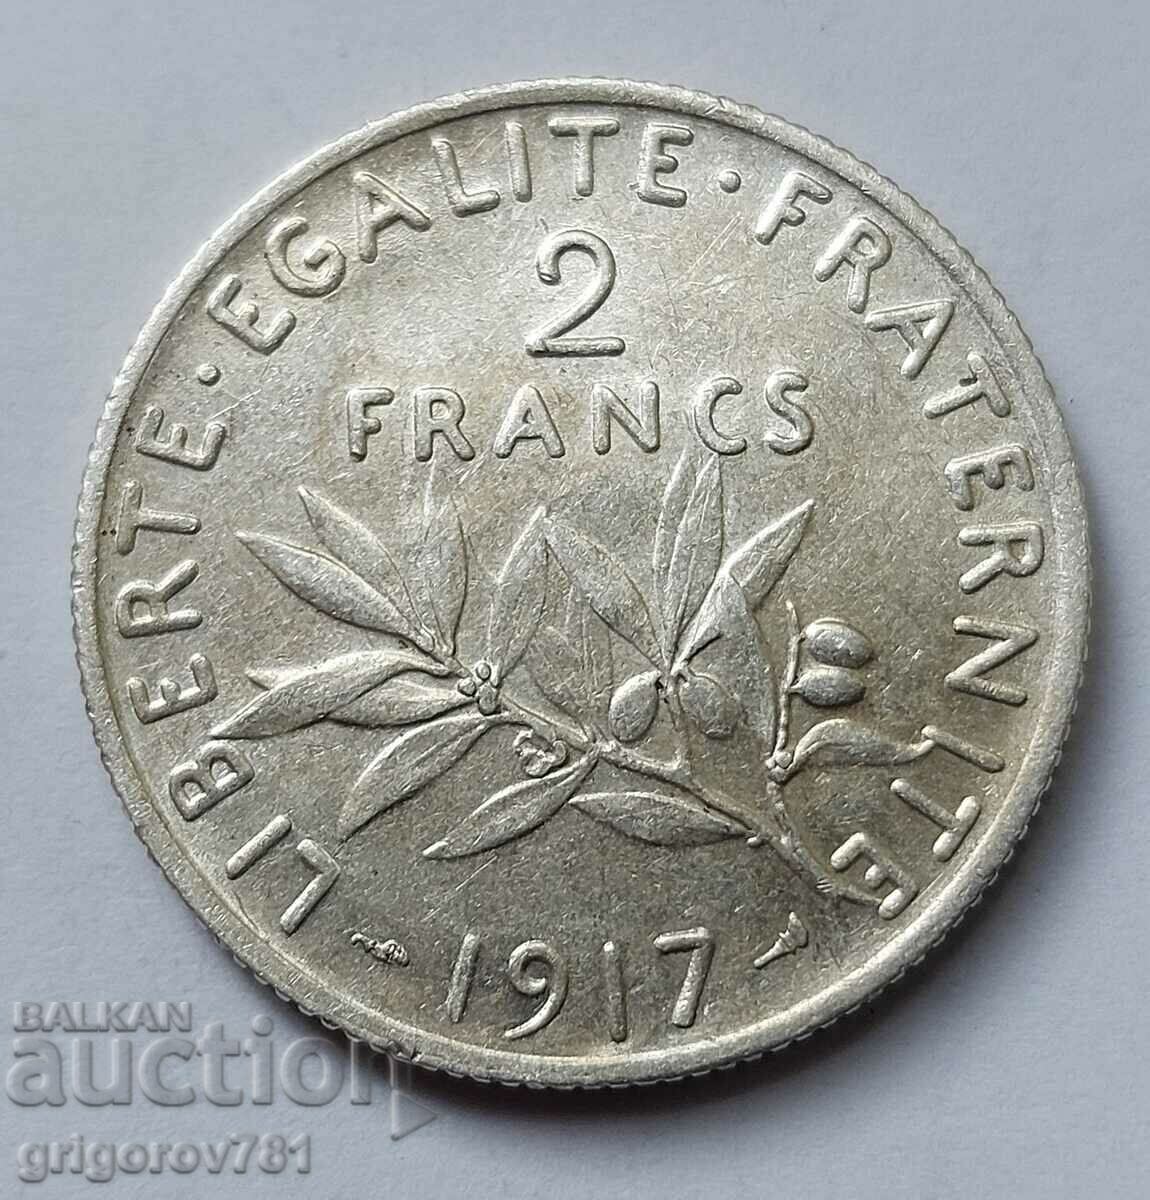 2 Φράγκα Ασήμι Γαλλία 1917 - Ασημένιο νόμισμα #98